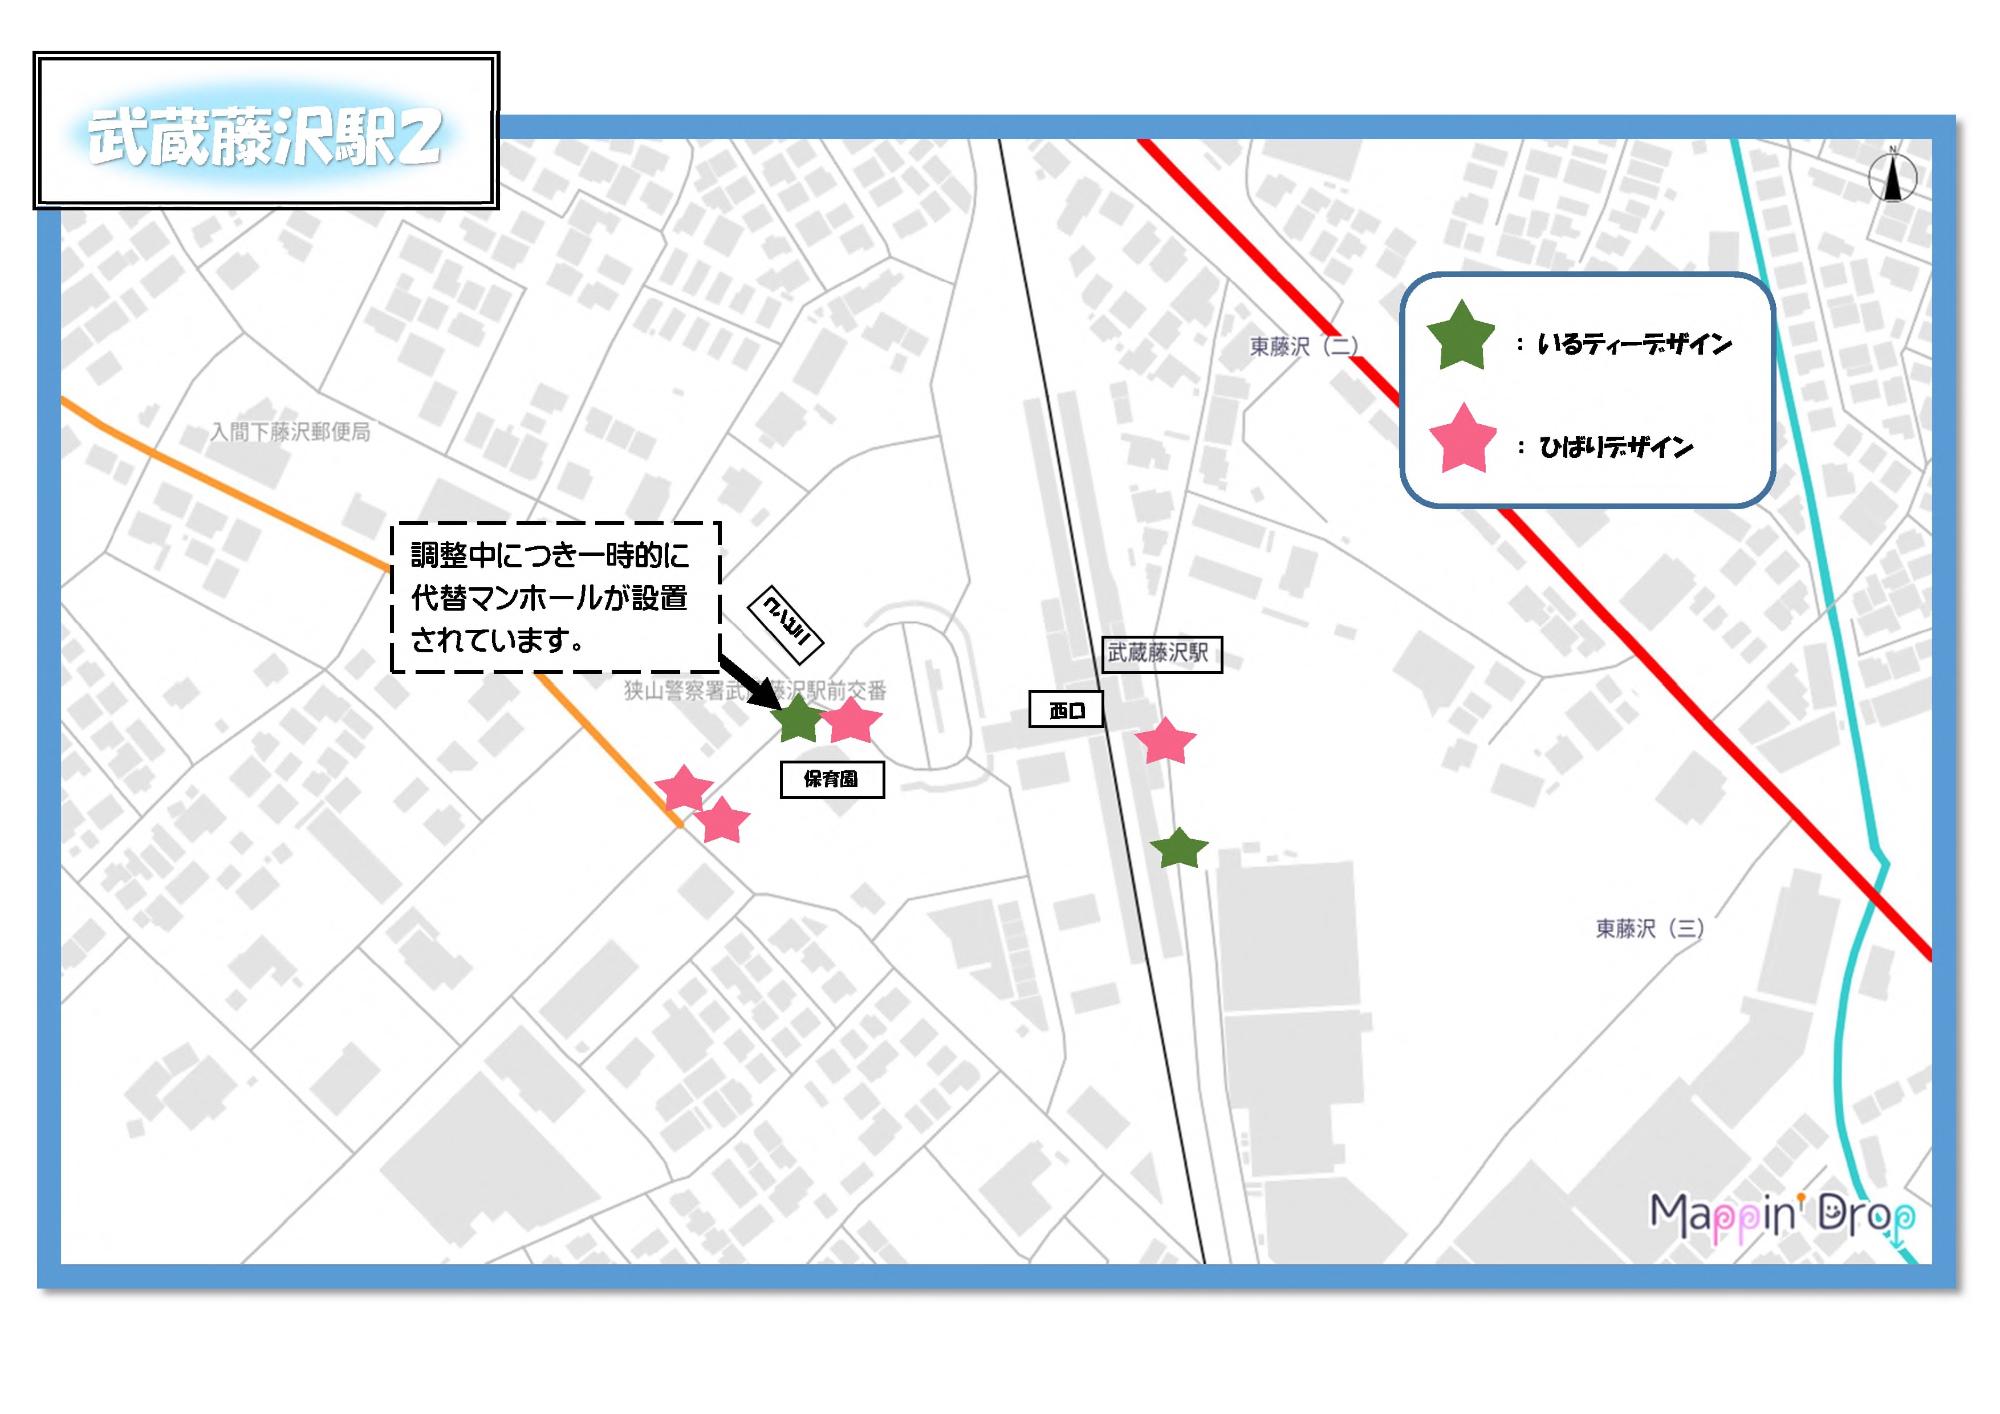 武蔵藤沢駅周辺にあるデザインマンホールふたの位置を示した設置マップ2